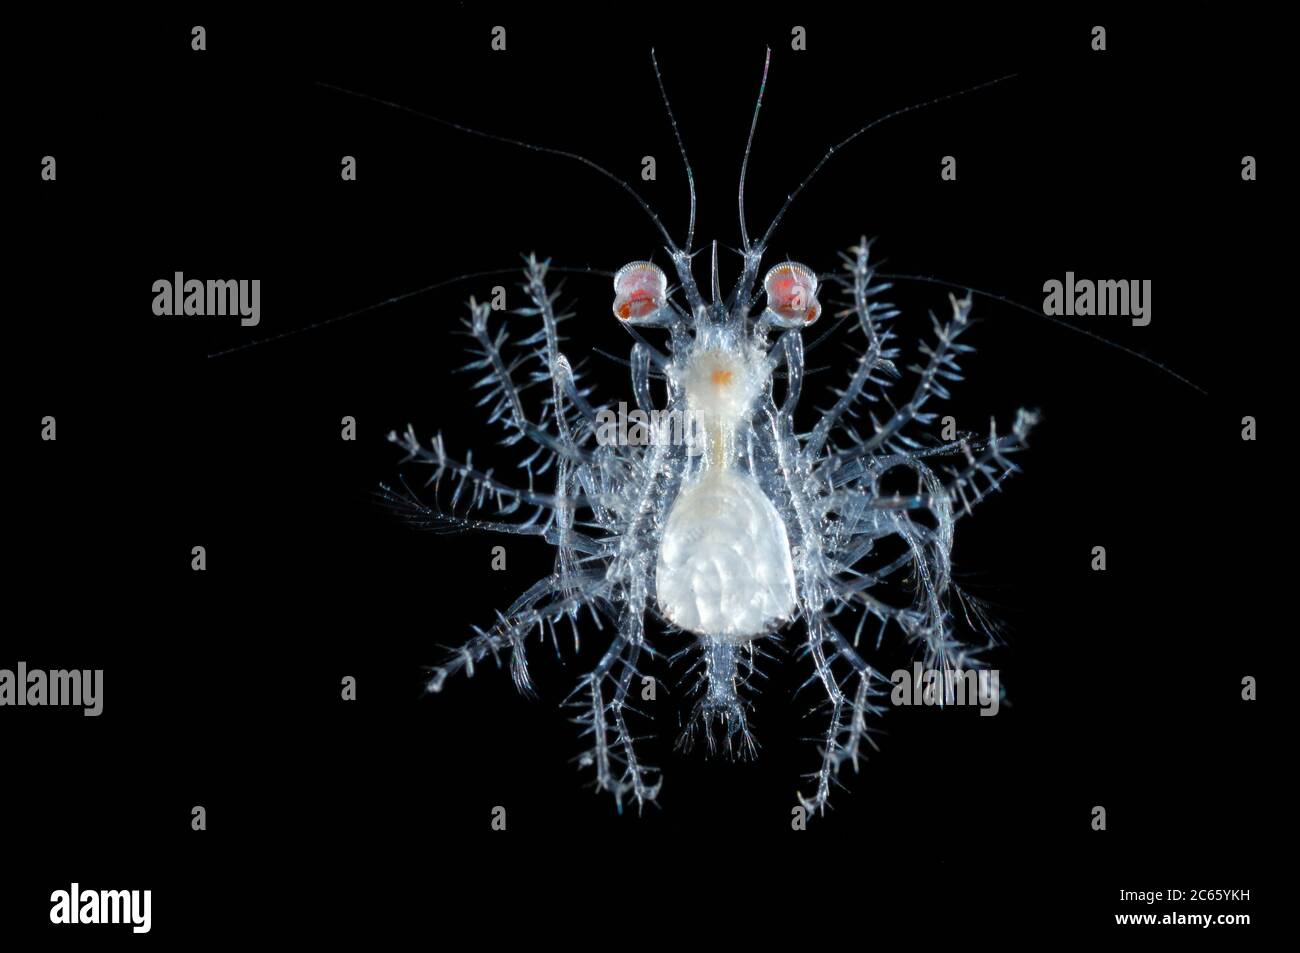 Durante su desarrollo de huevo a crustáceos adultos pasan por varias etapas larvales. Esta etapa de desarrollo pelágico de un cangrejo se llama Megalopa. Megalopa-Larve Foto de stock